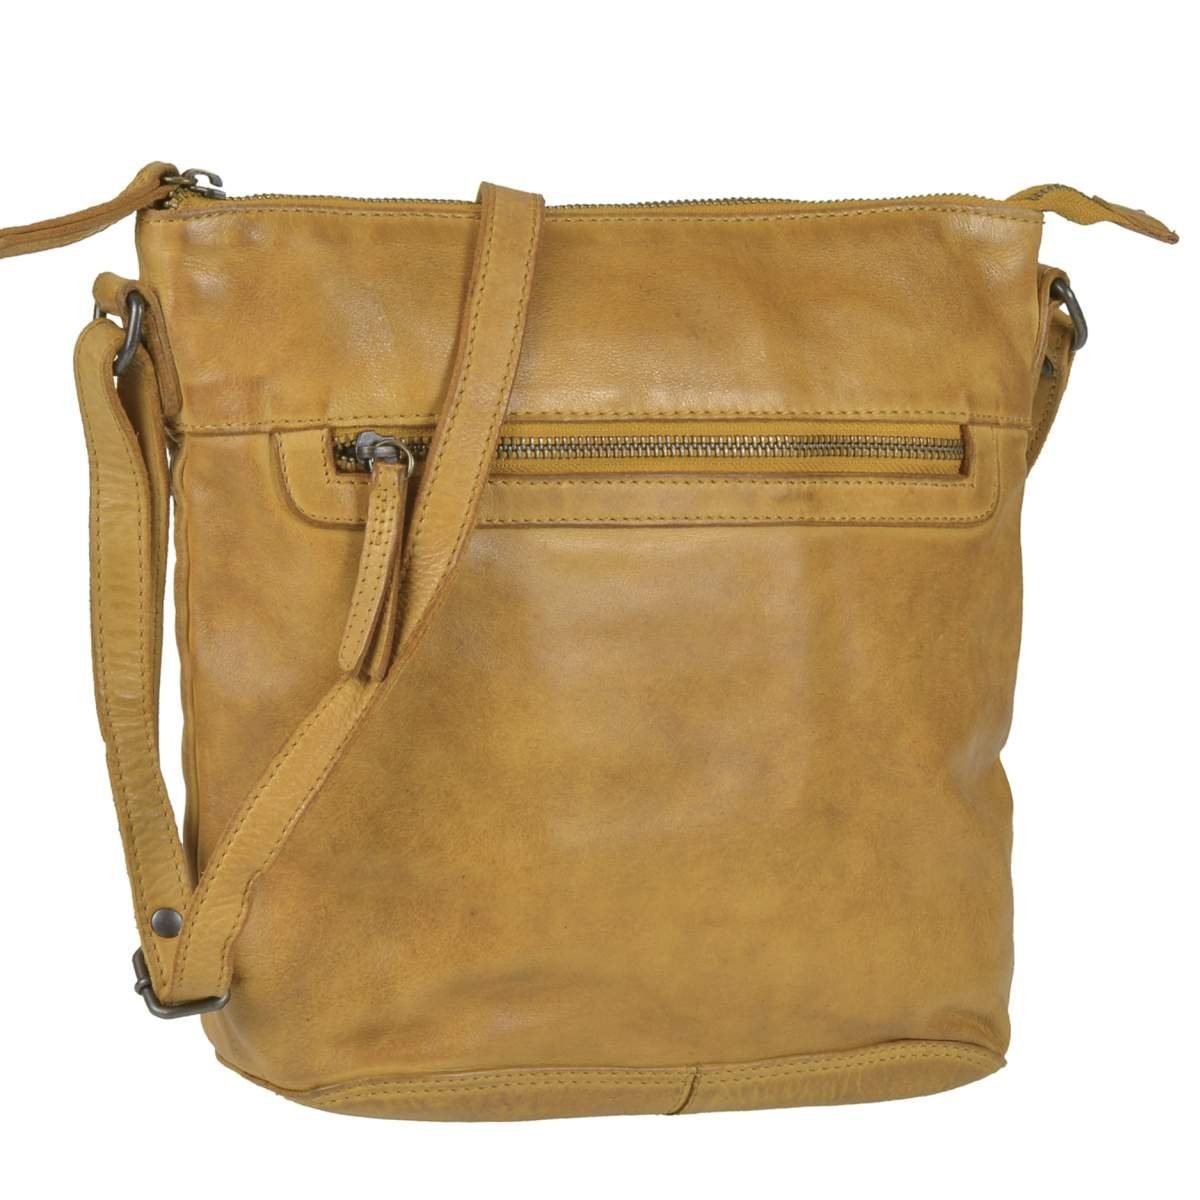 Bear Design Umhängetasche Erna, kleine Handtasche 30x27cm, Shopper, Schultertasche, Leder ocker gelb ochre